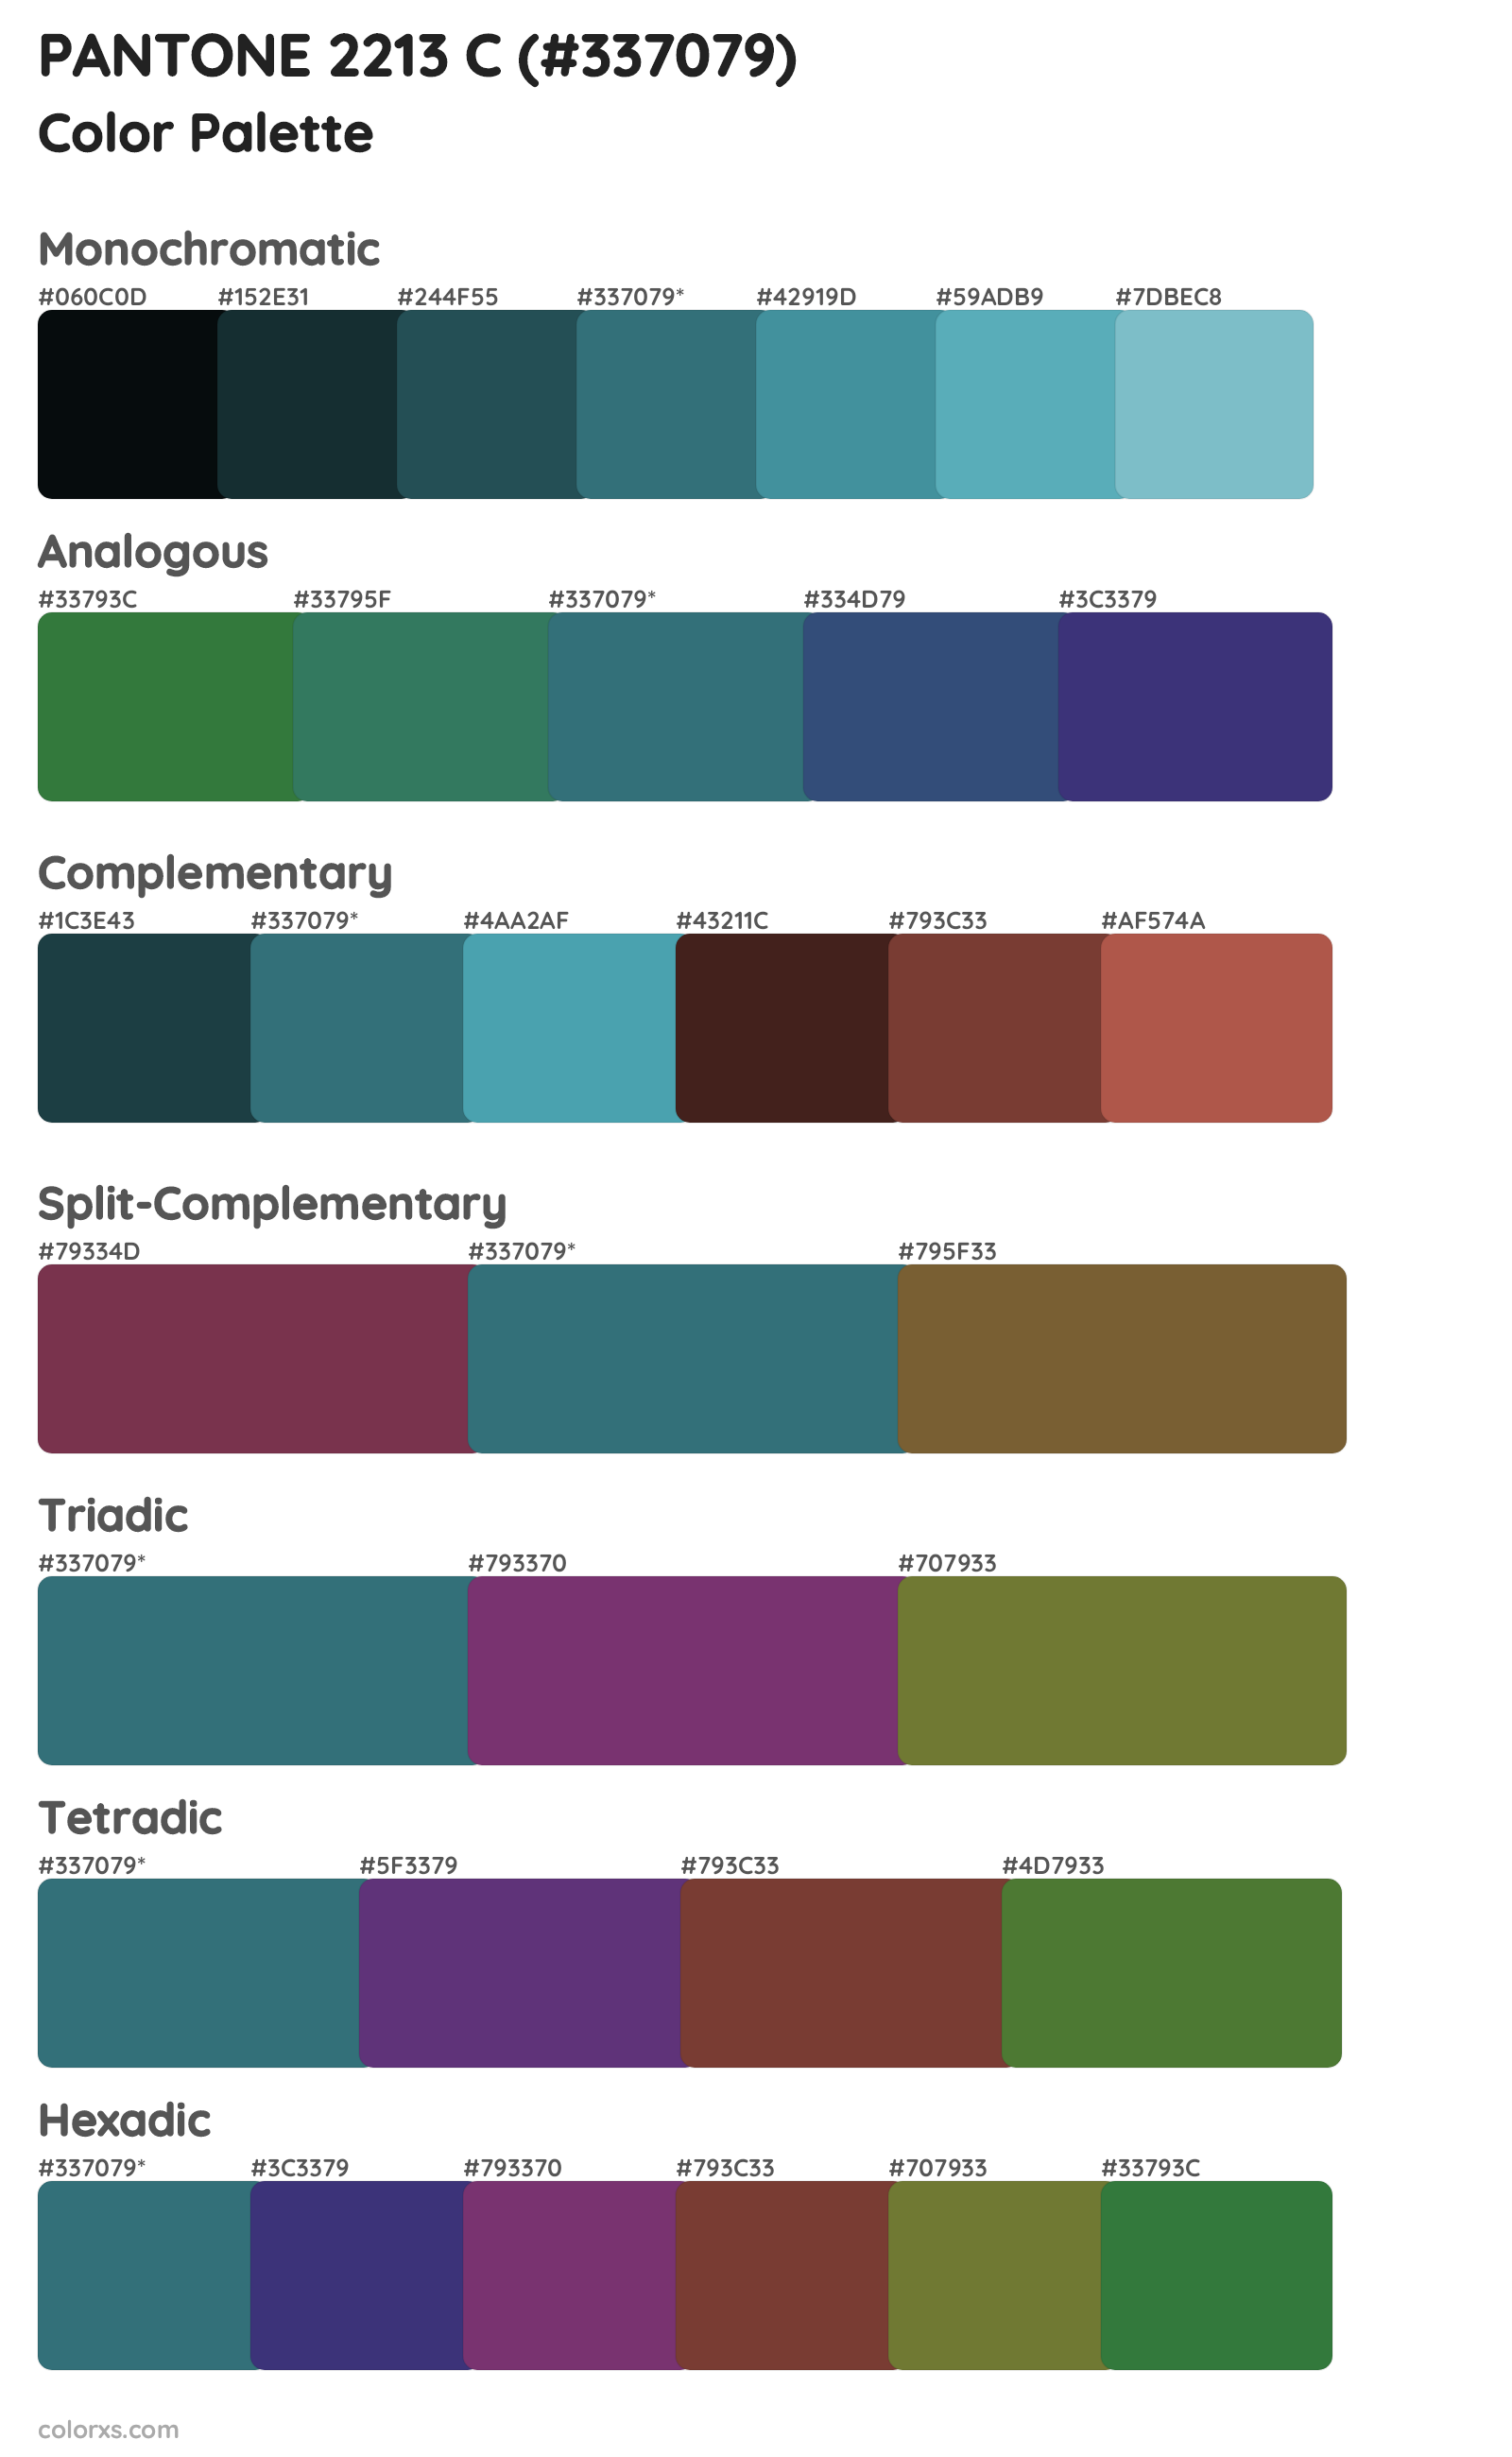 PANTONE 2213 C Color Scheme Palettes